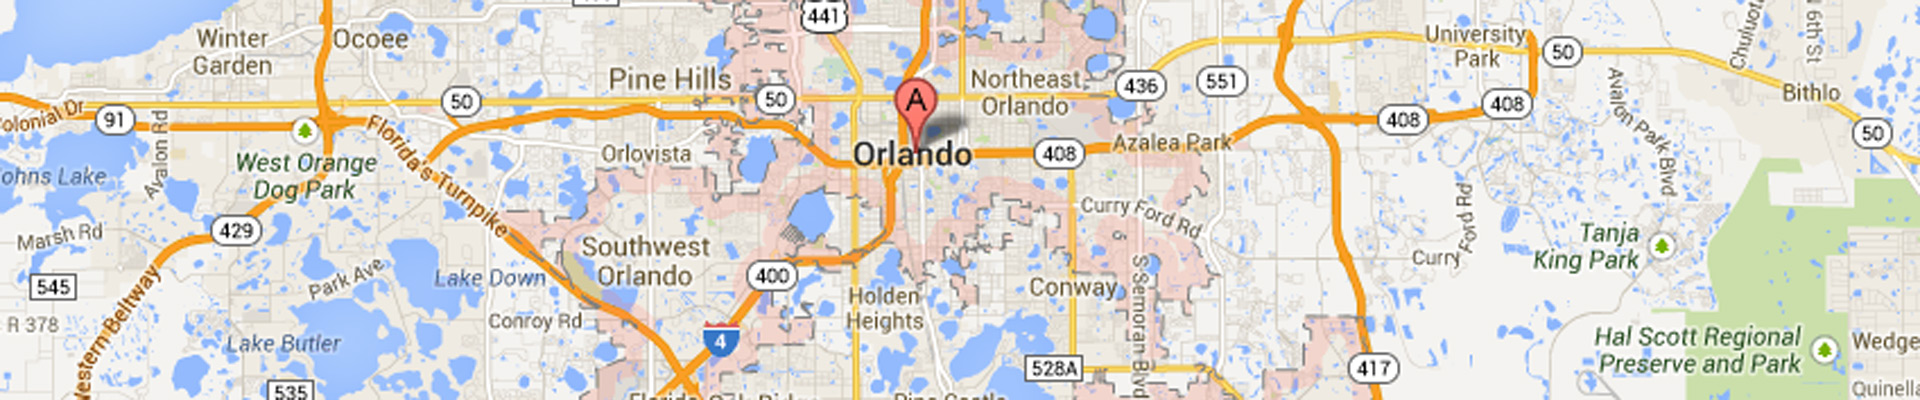 Orlando Subway Locations